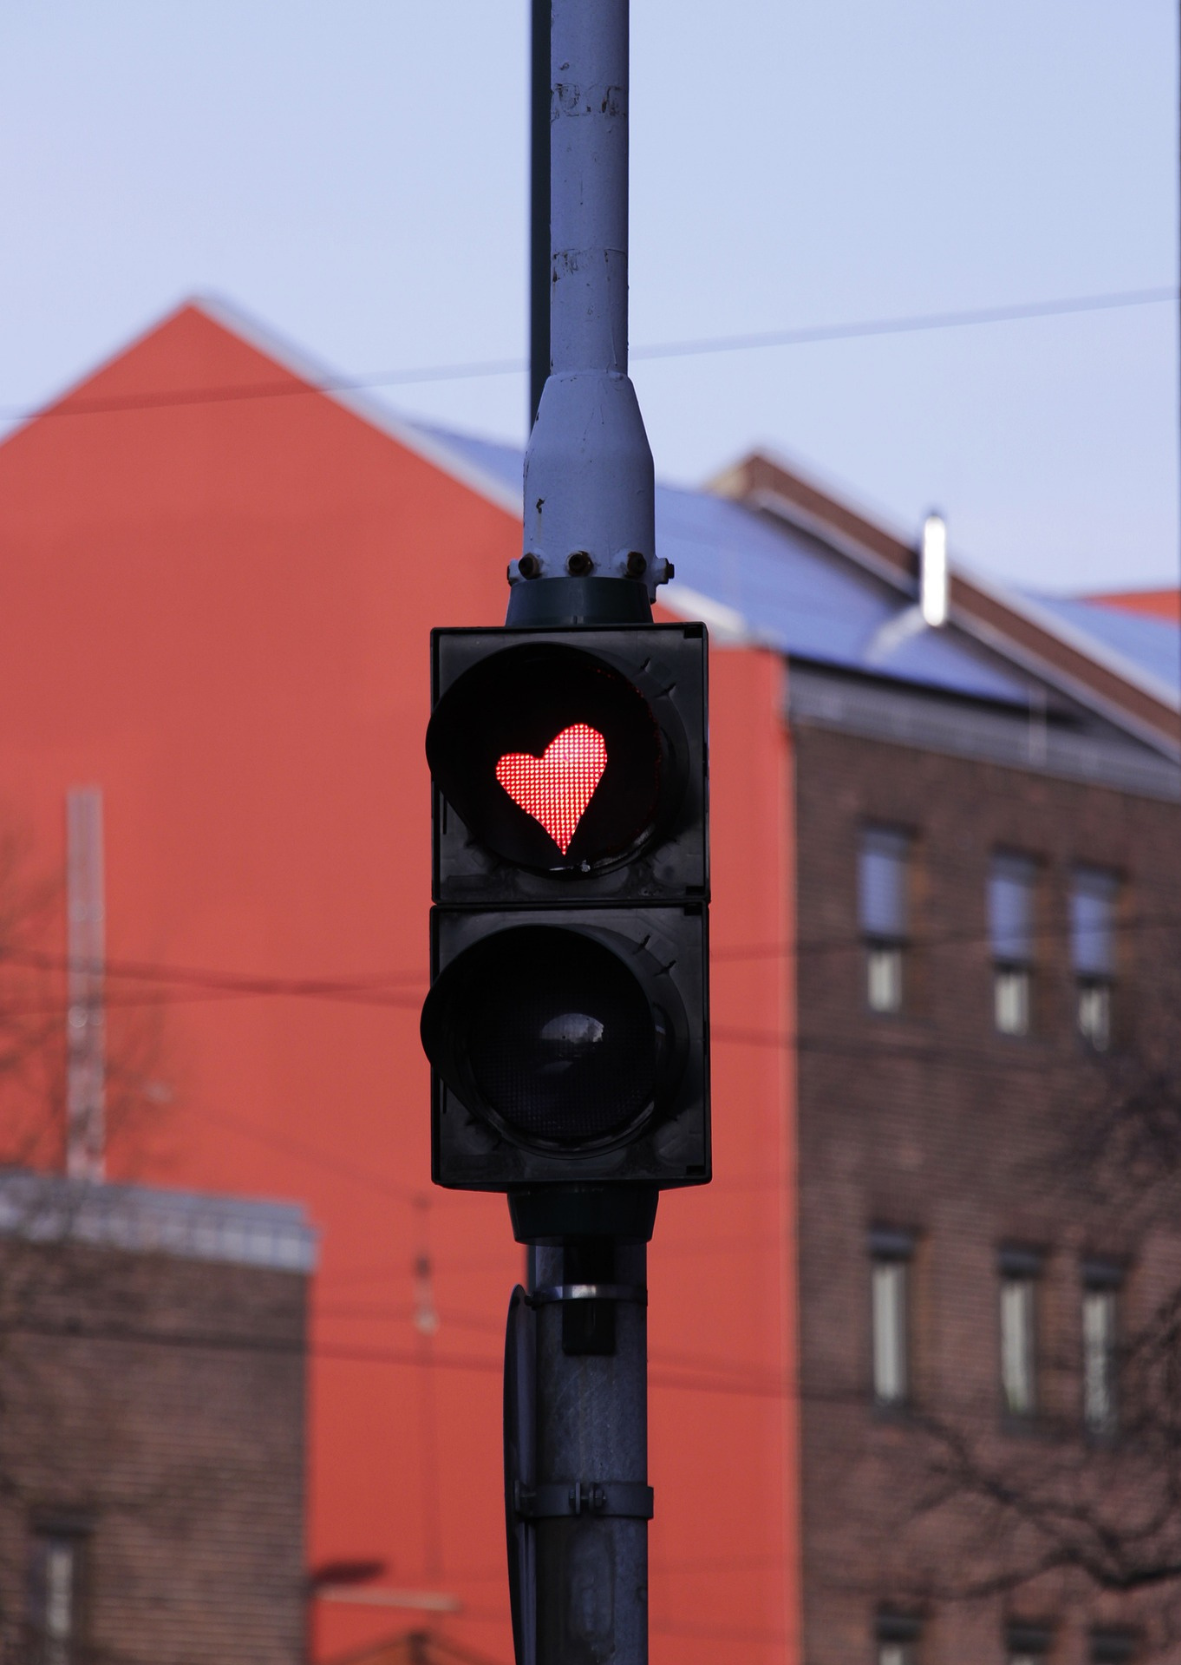 Un feu de circulation affichant un symbole de cœur rouge sur un fond urbain flou avec un bâtiment rouge.